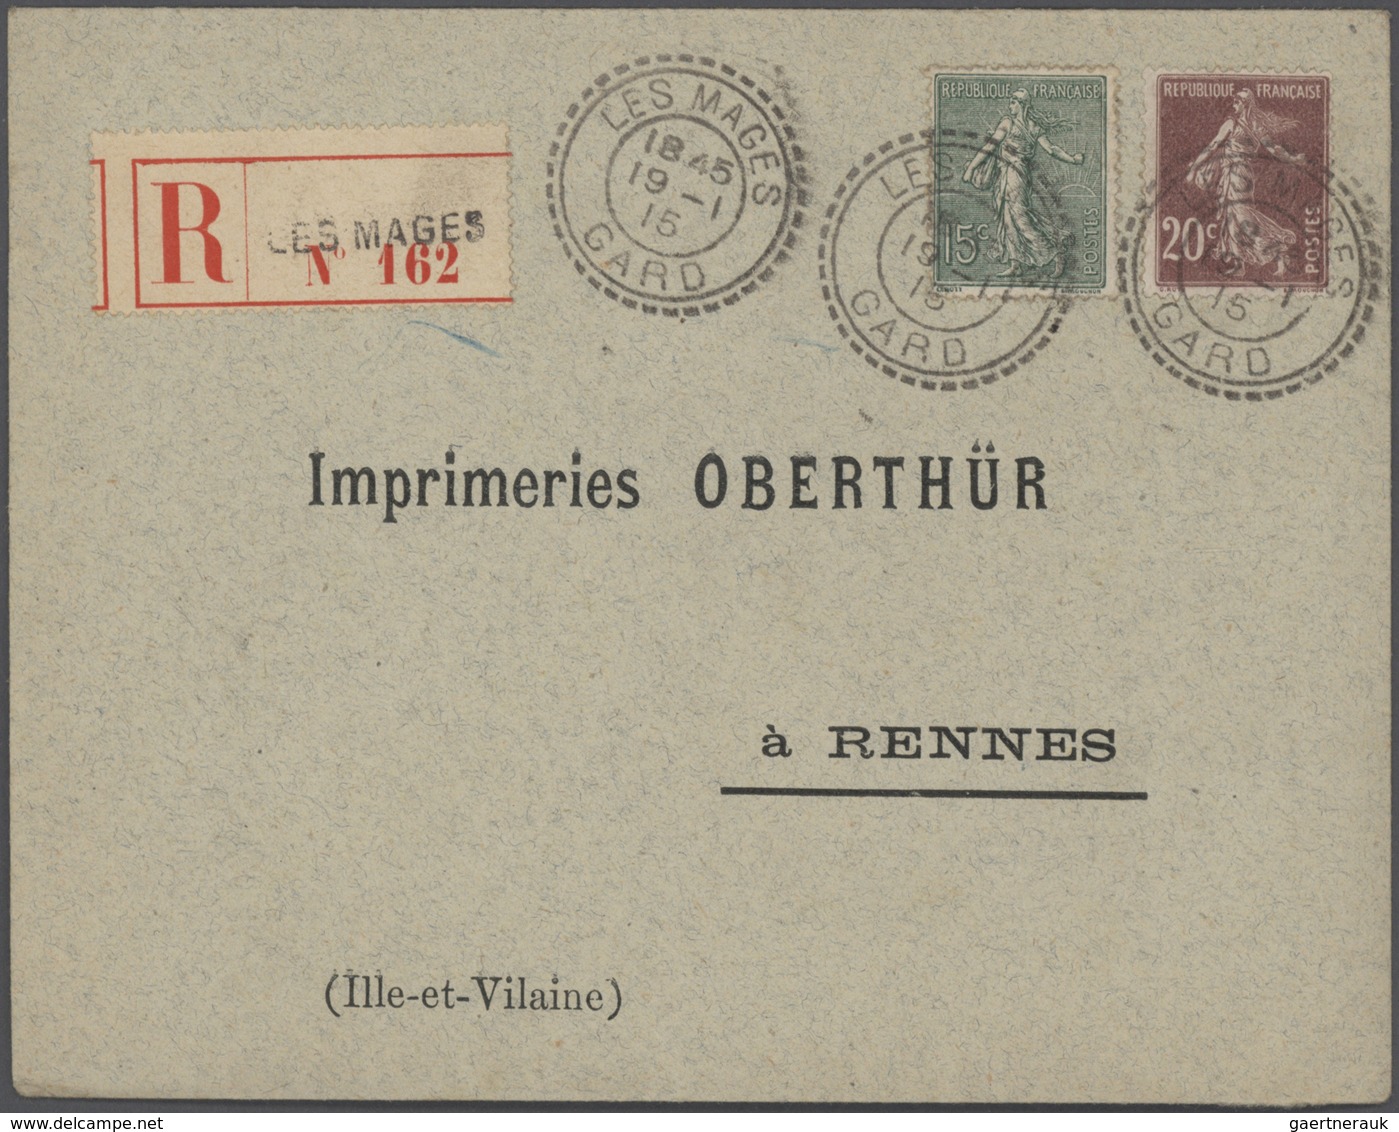 26428 Frankreich: 1910/50 (ca.), Sammlung von ca. 335 Einschreibe-Briefen, sehr spezialisiert mit vielen T